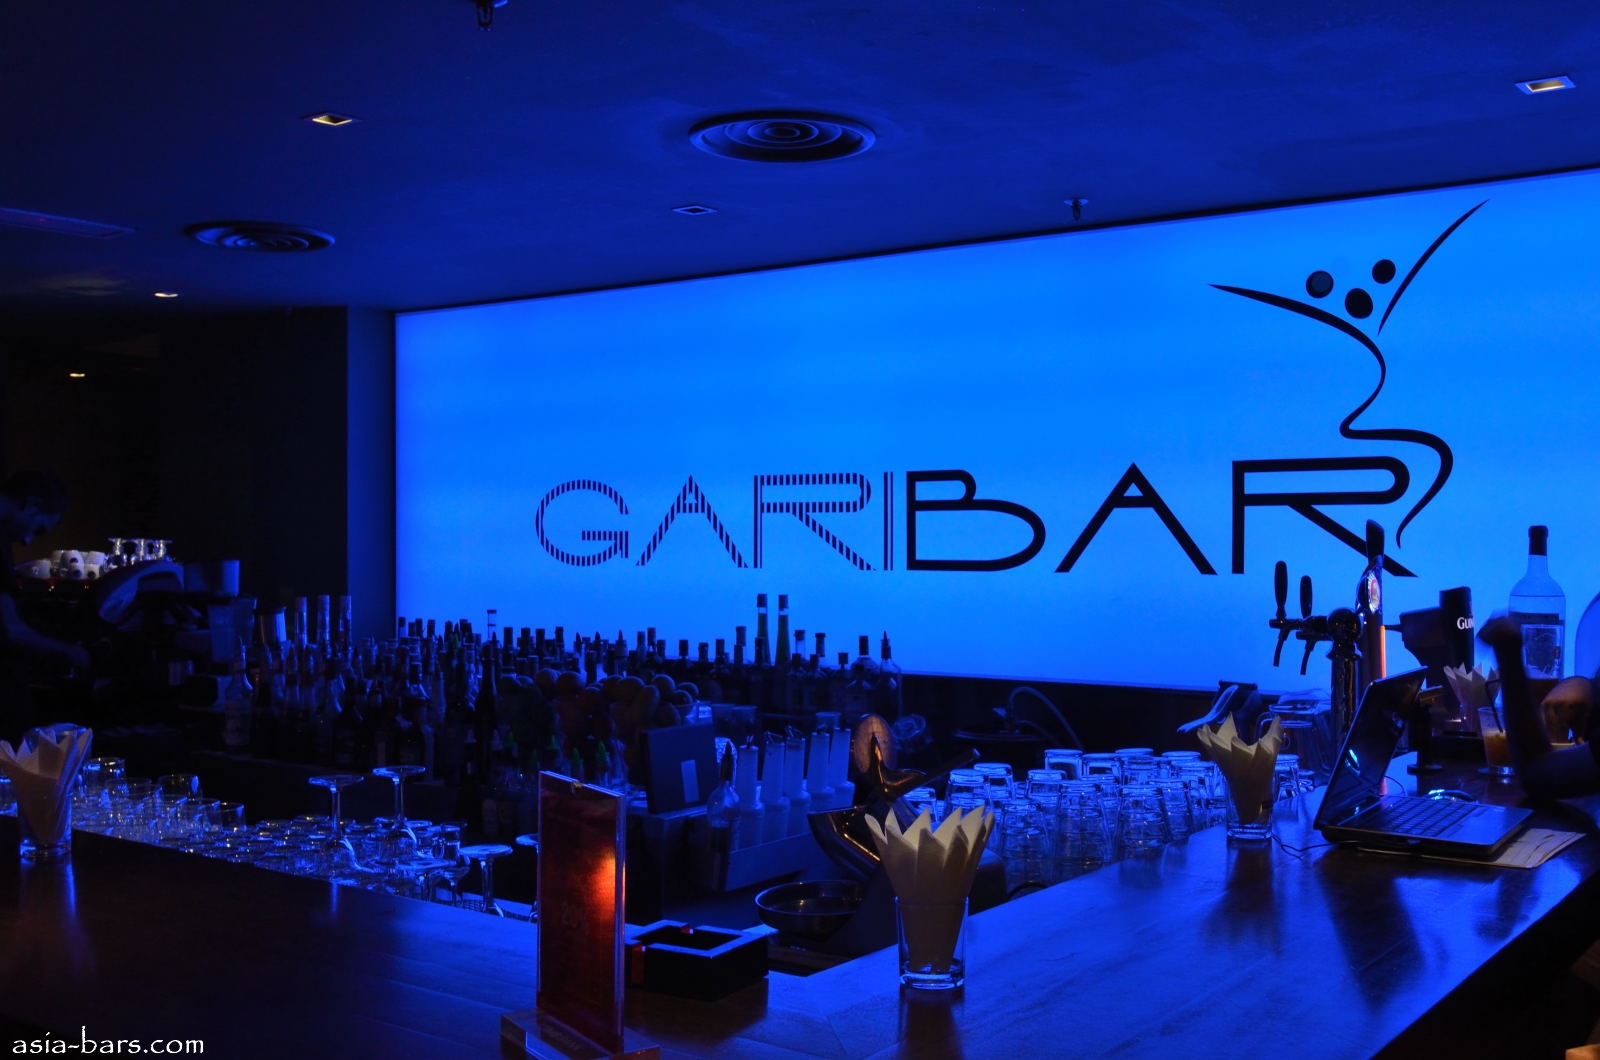 GARIBAR- fashionable lounge & bar in Kuala Lumpur- adding a buzz ...